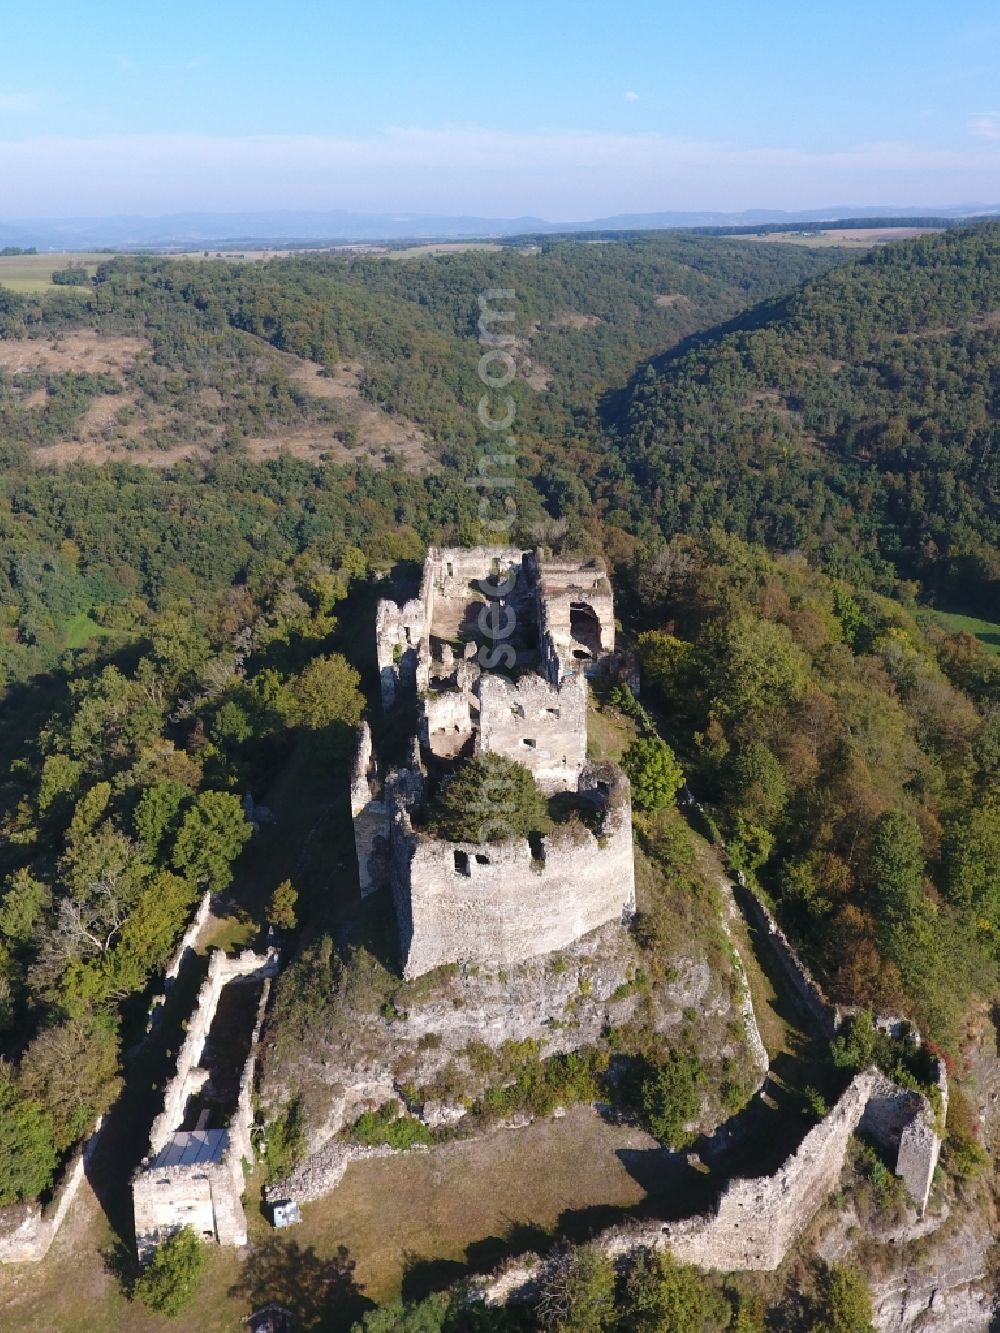 Cabradsky Vrbovok from above - Ruins and vestiges of the former castle in Cabradsky Vrbovok in Banskobystricky kraj, Slovakia